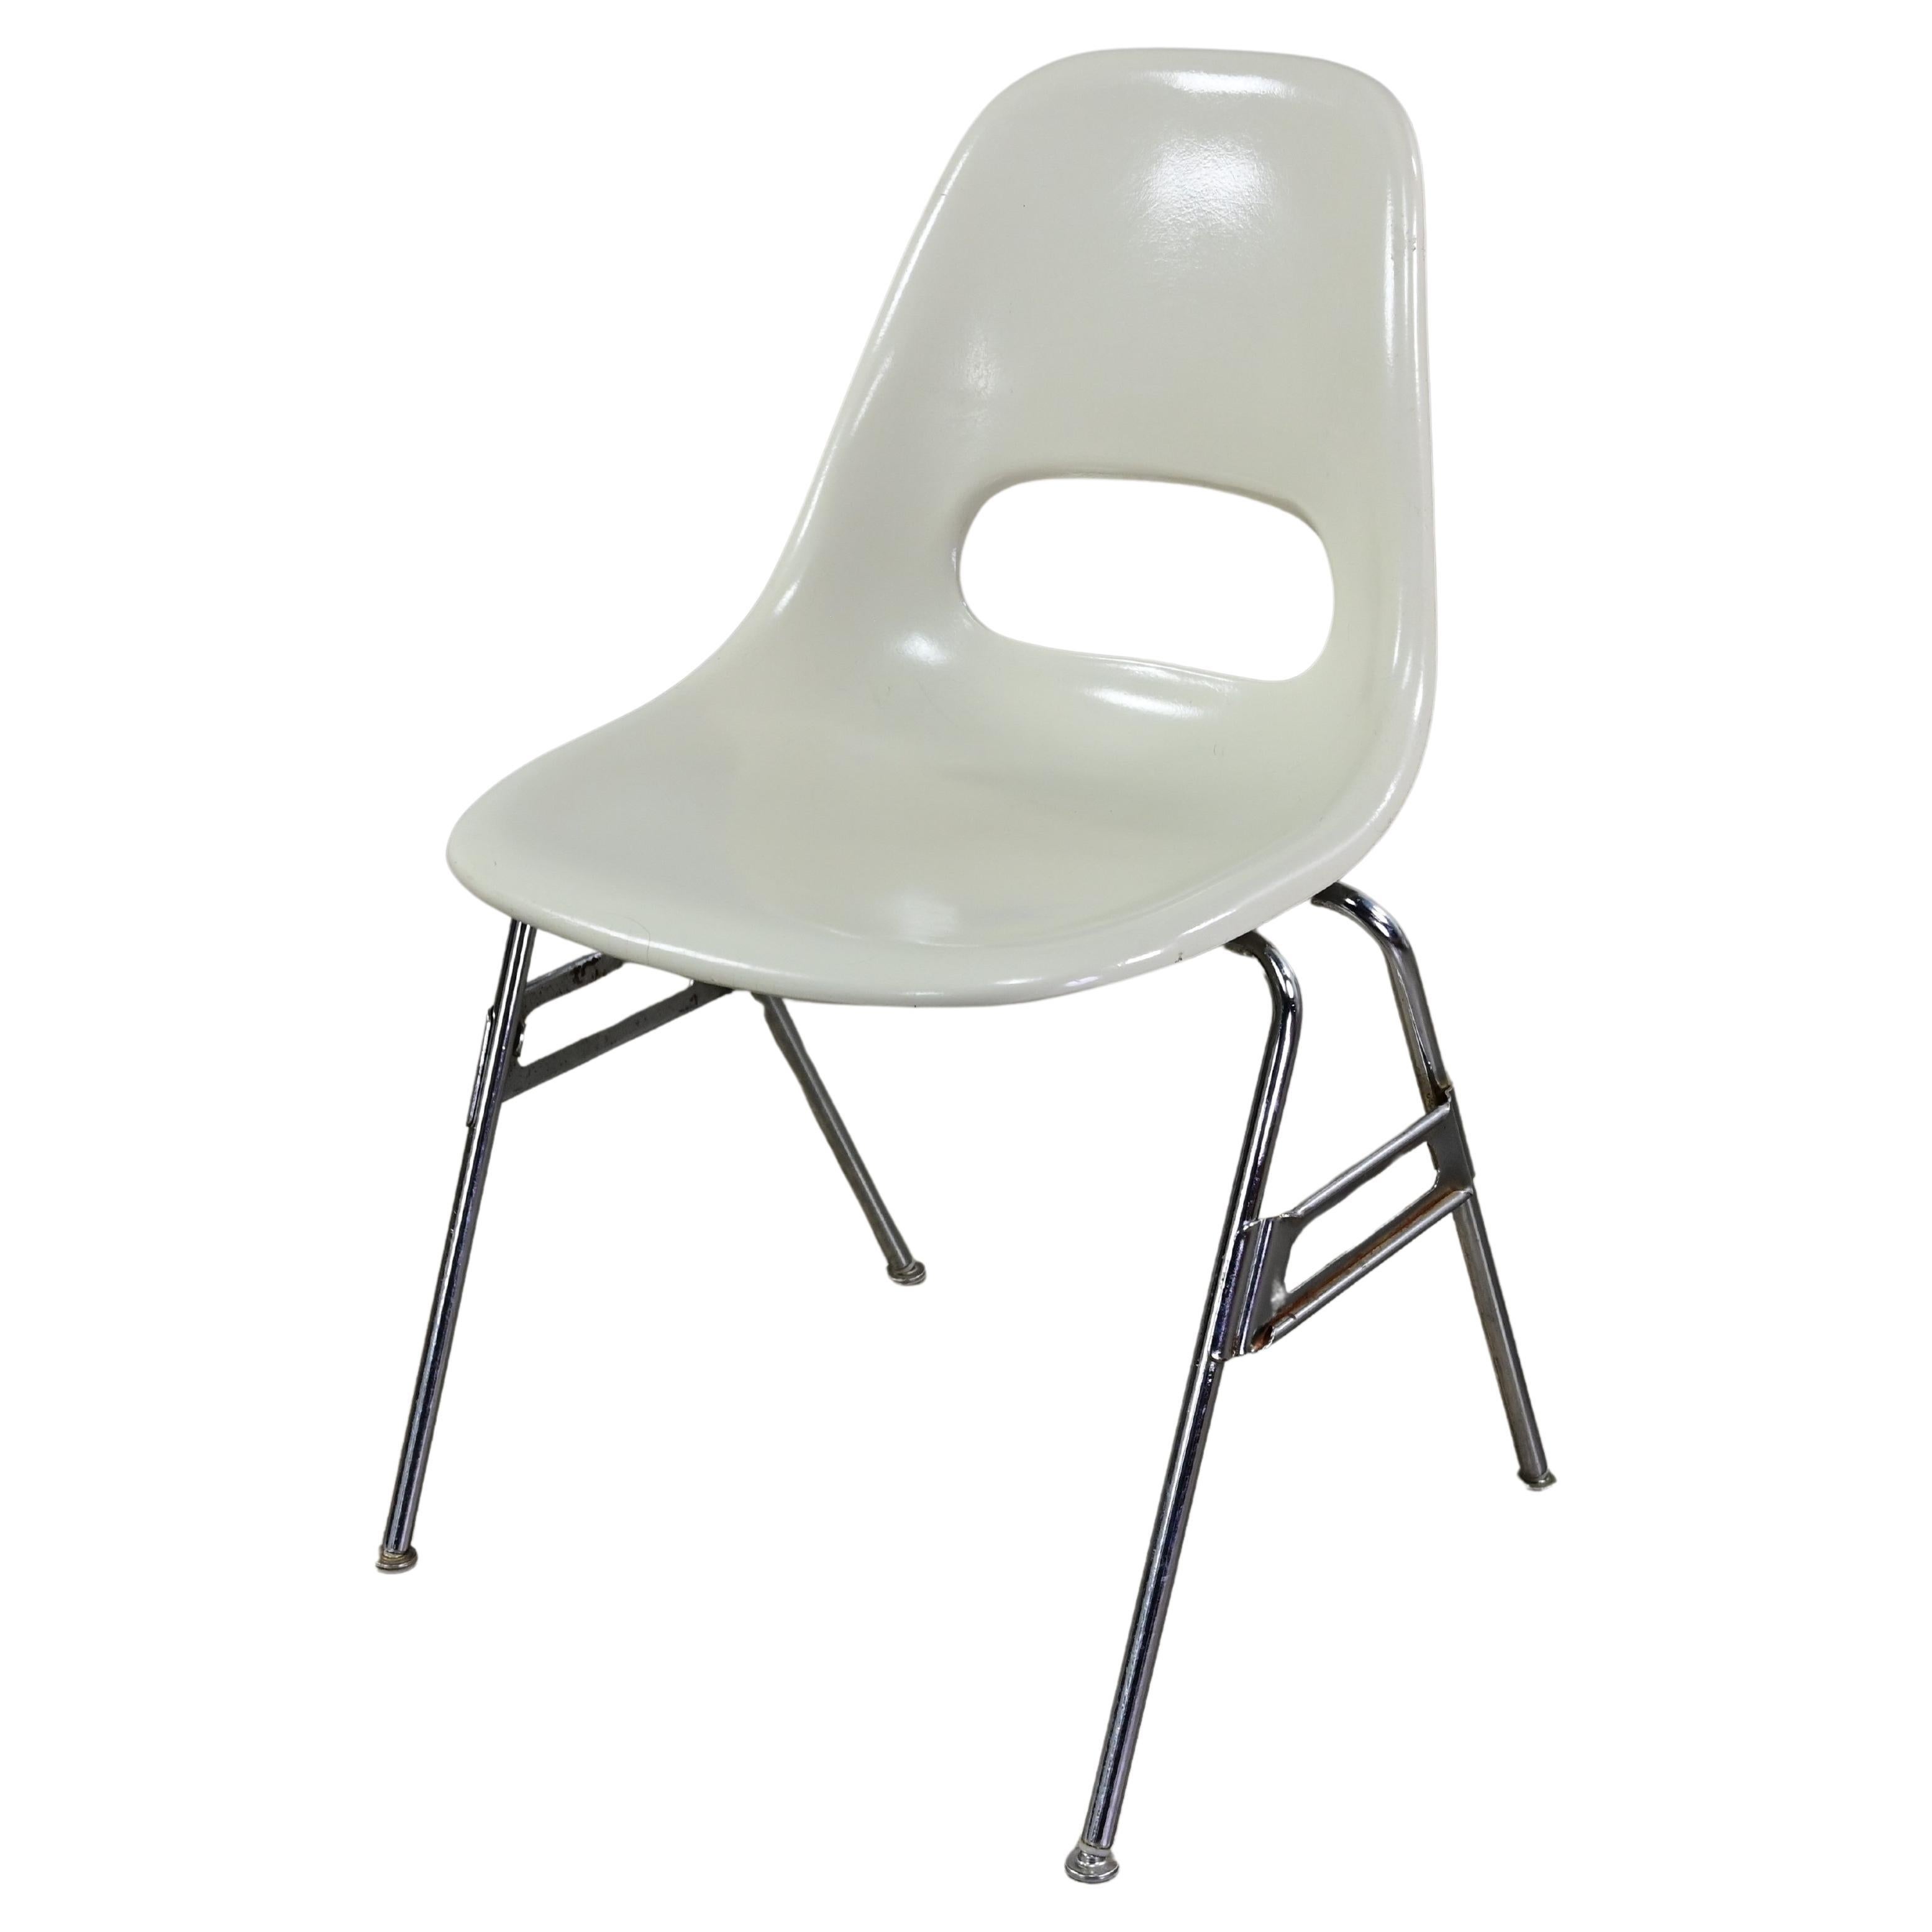 1960-70’s MCM Krueger International White Fiberglass & Chrome Stacking Chairs For Sale